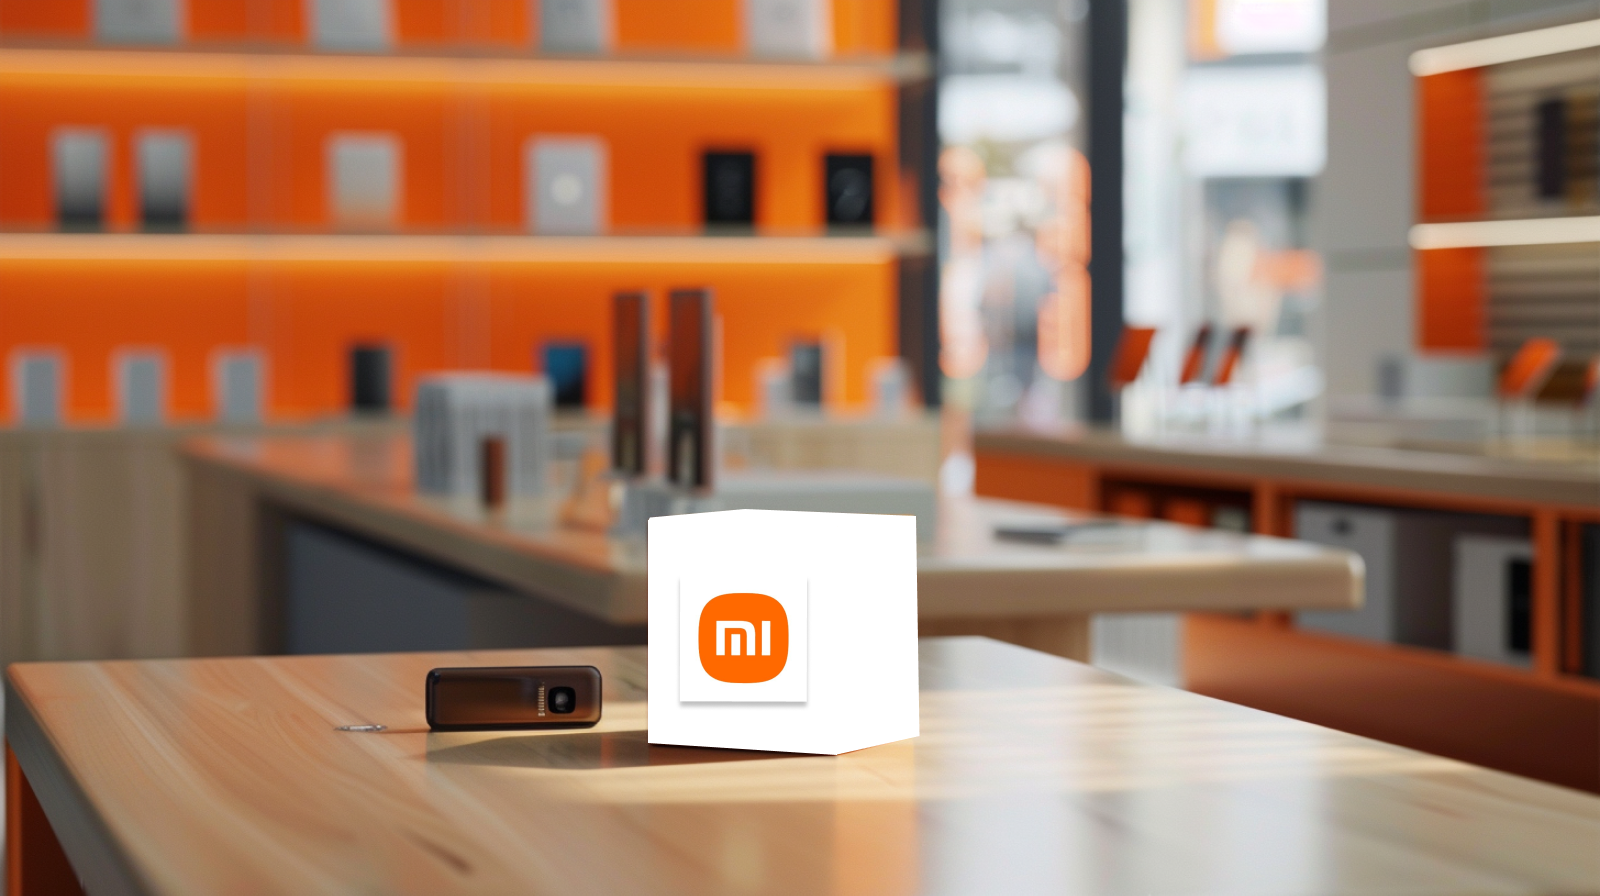 ein Werbedisplay mit einem Würfel mit dem Xiaomi-Logo in einem Ladenumfeld, mit elektronischen Geräten im Hintergrund